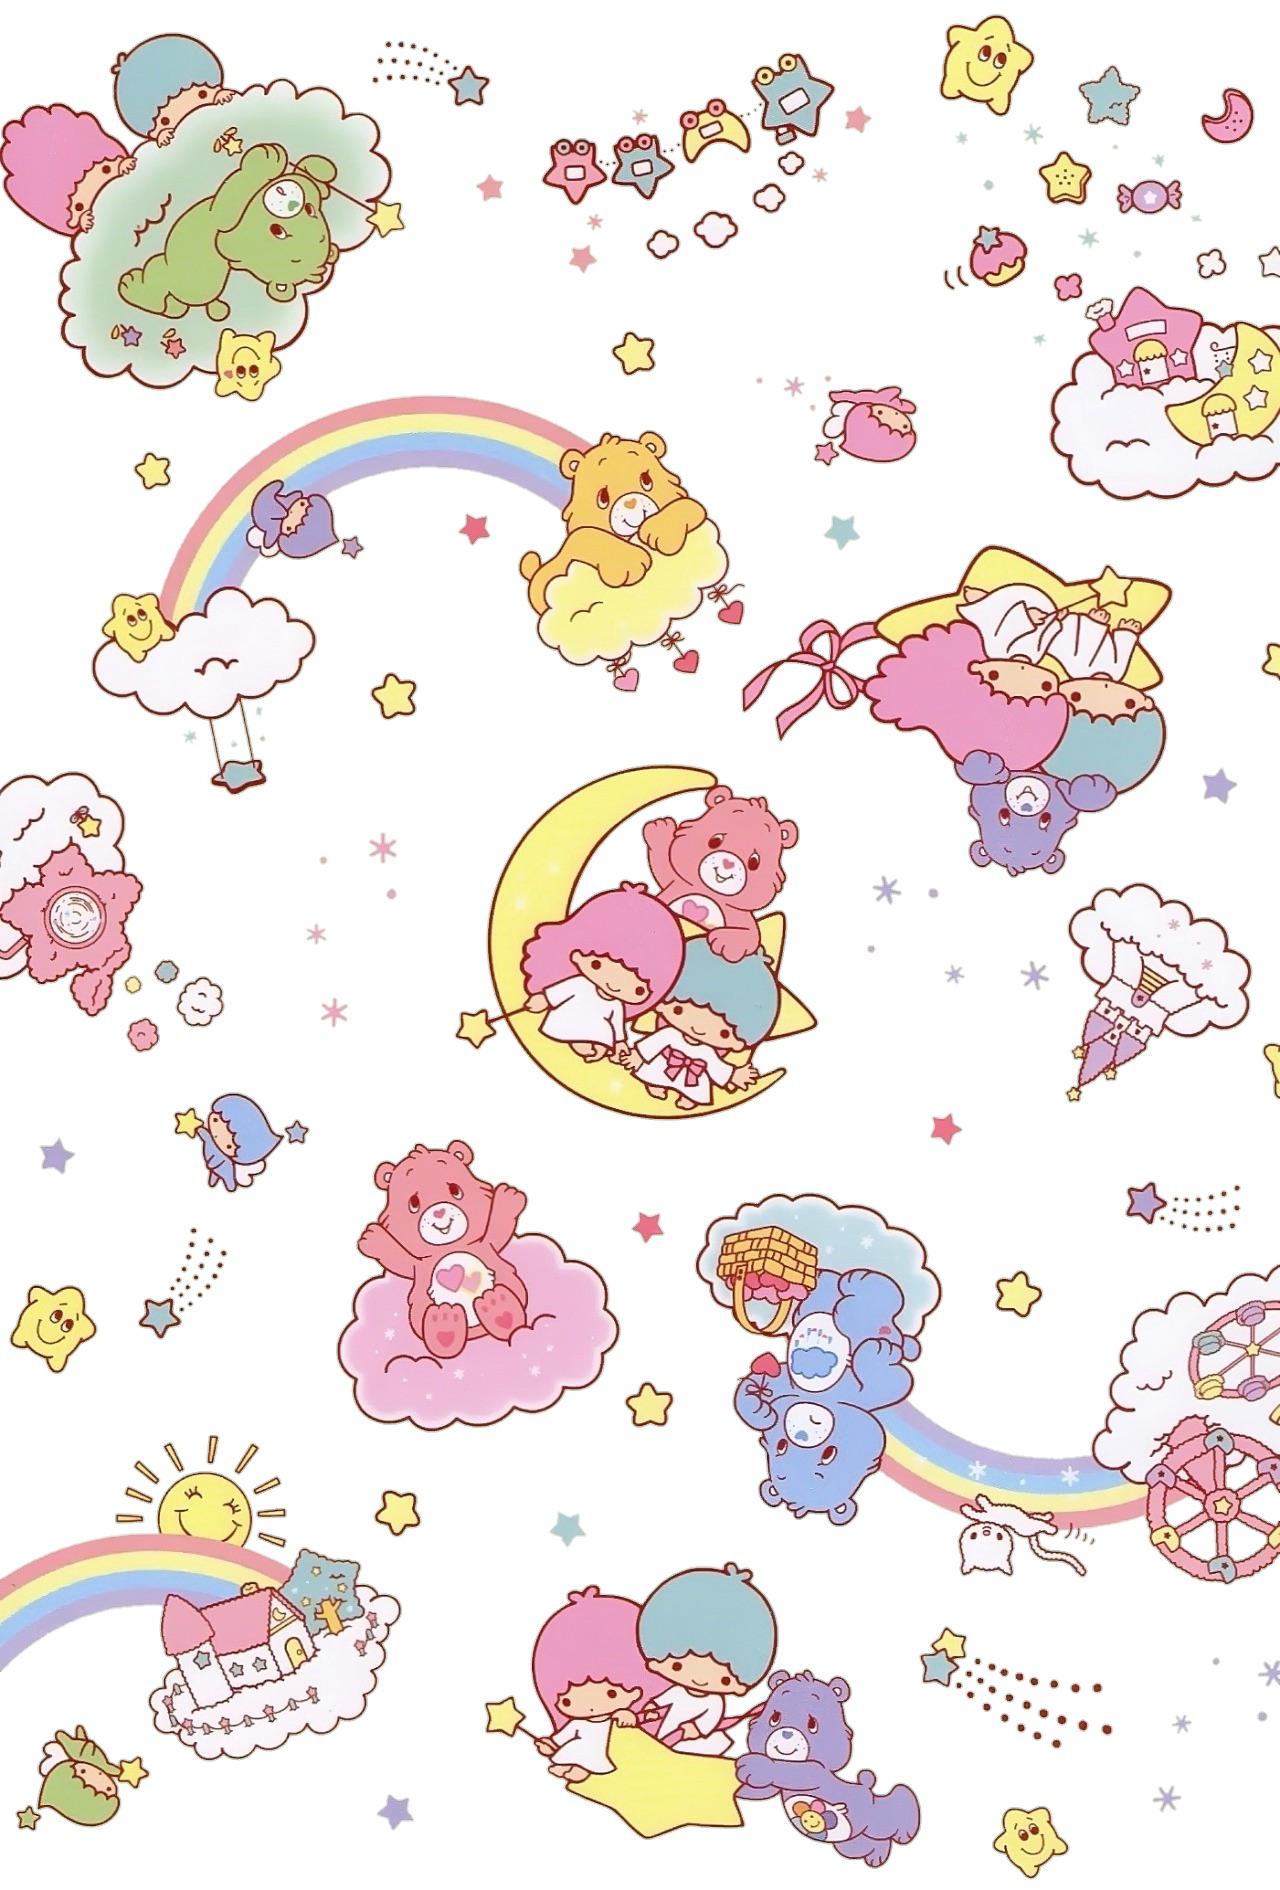 Care Bears x Little Twin Stars wallpaper